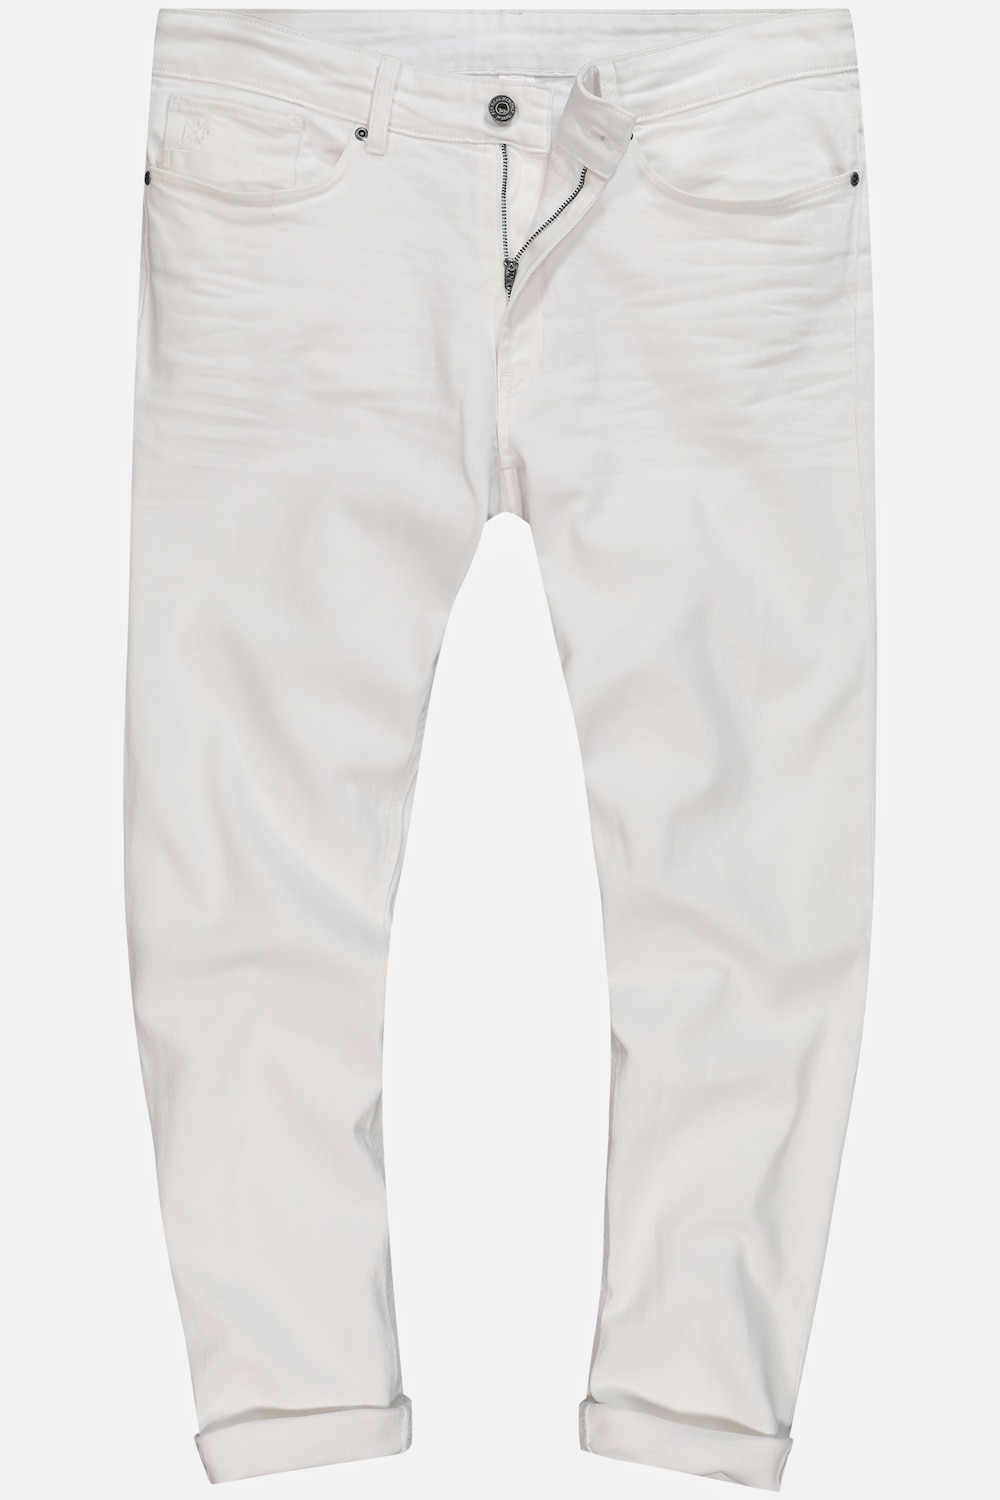 Grote Maten Jeans, Heren, wit, Maat: 102, Katoen, JP1880